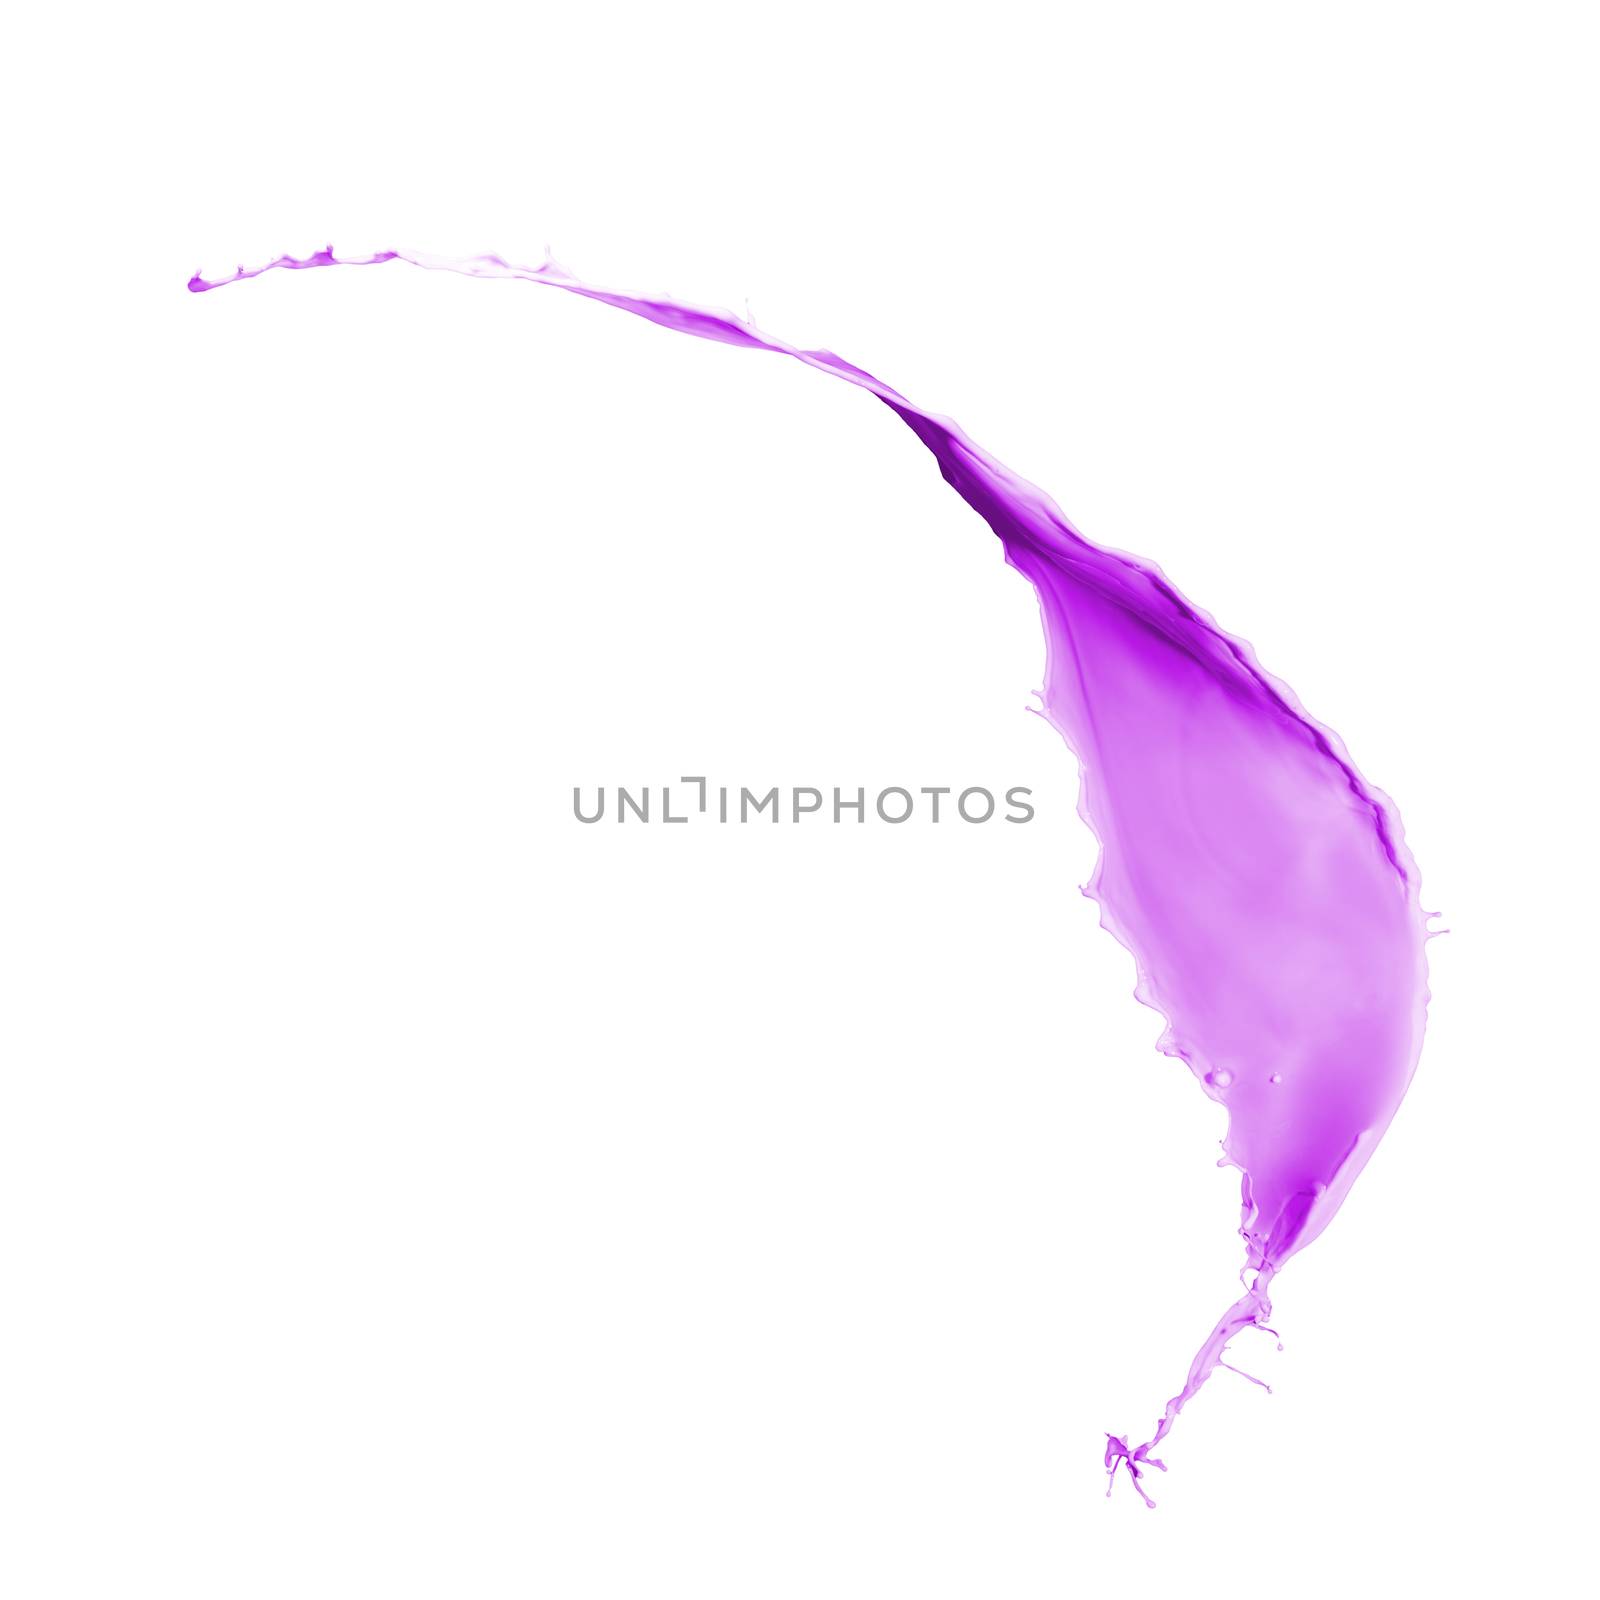 purple paint splash isolated on white background